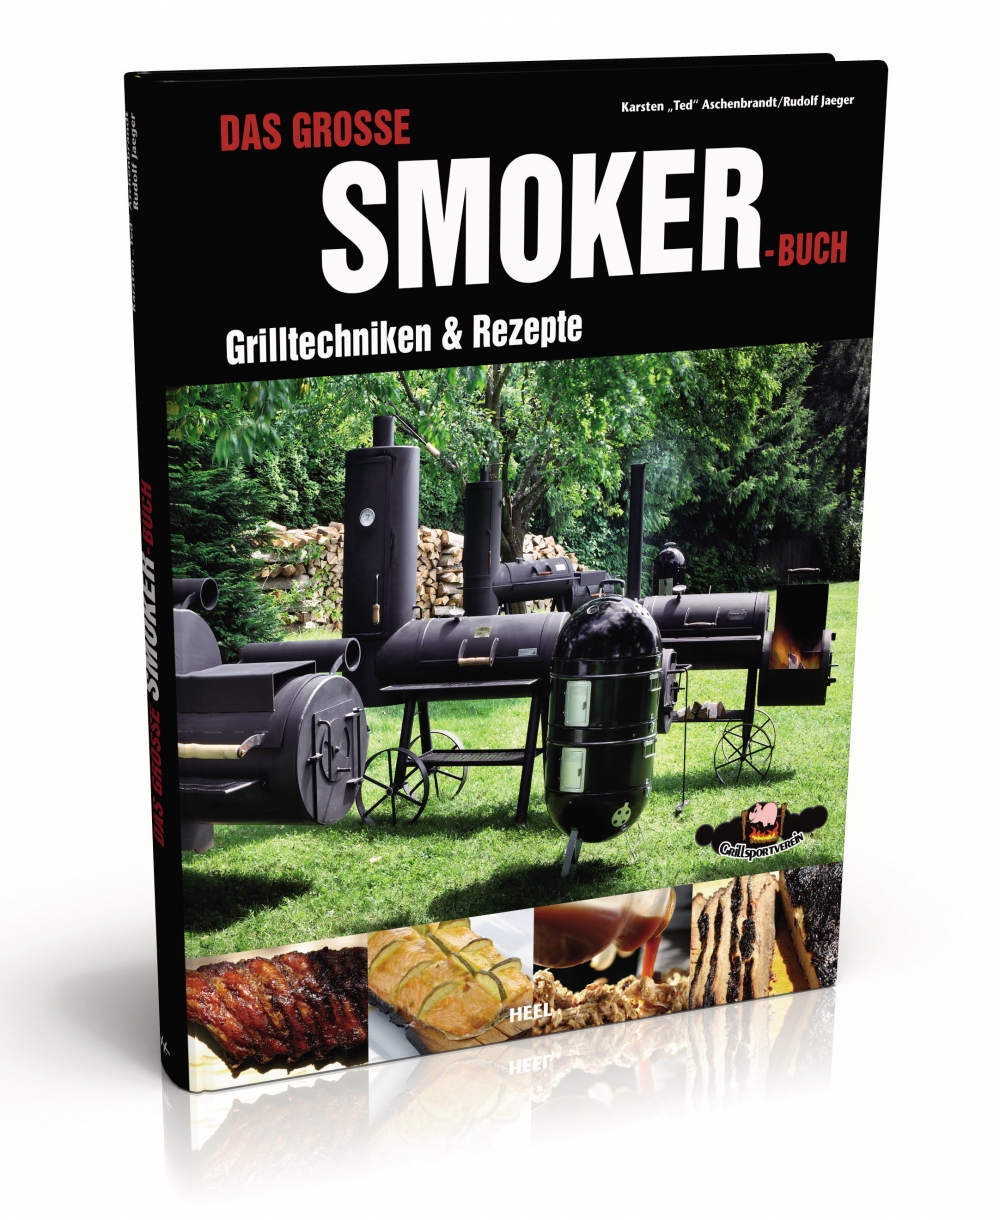 Das große Smoker Buch - Grilltechniken & Rezepte von Karsten Ted Aschenbrandt und Rudolf Jäger